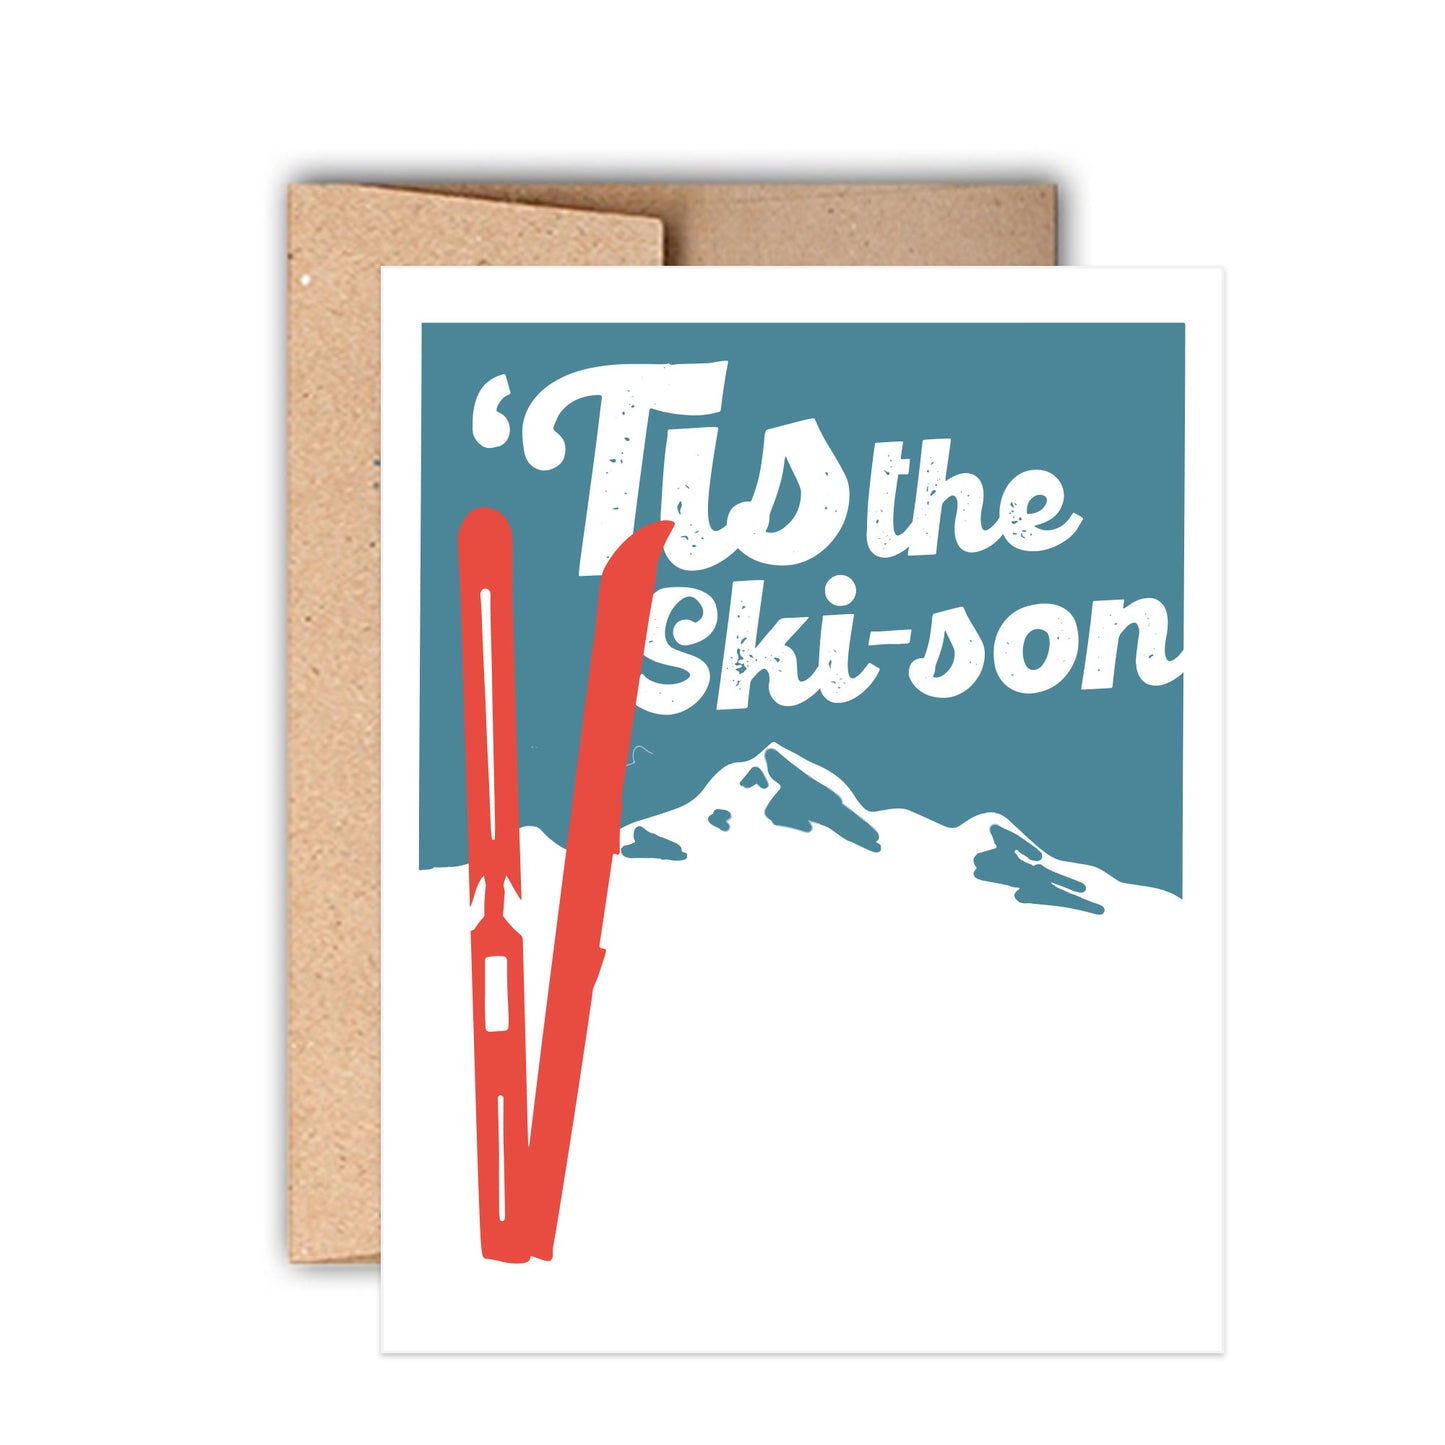 Tis the Ski-son